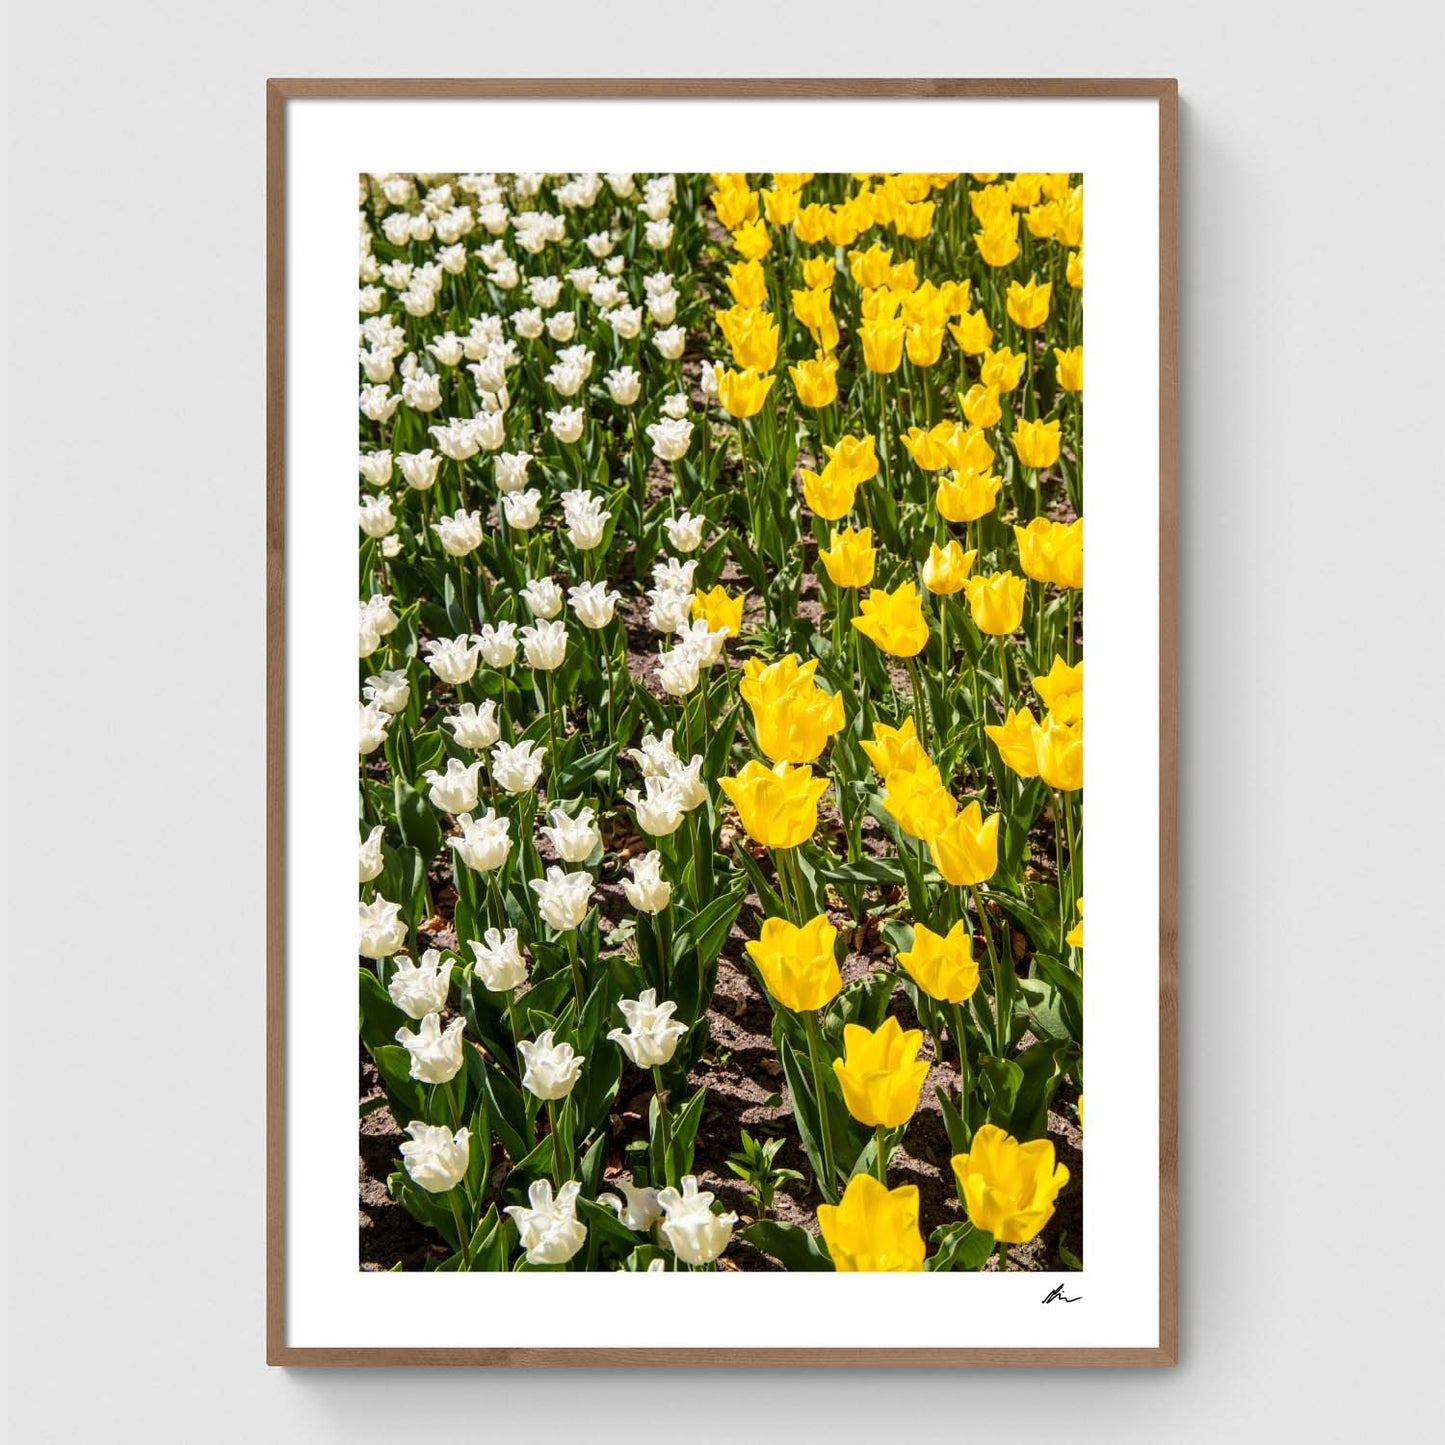 Hvide og gule tulipaner på mark